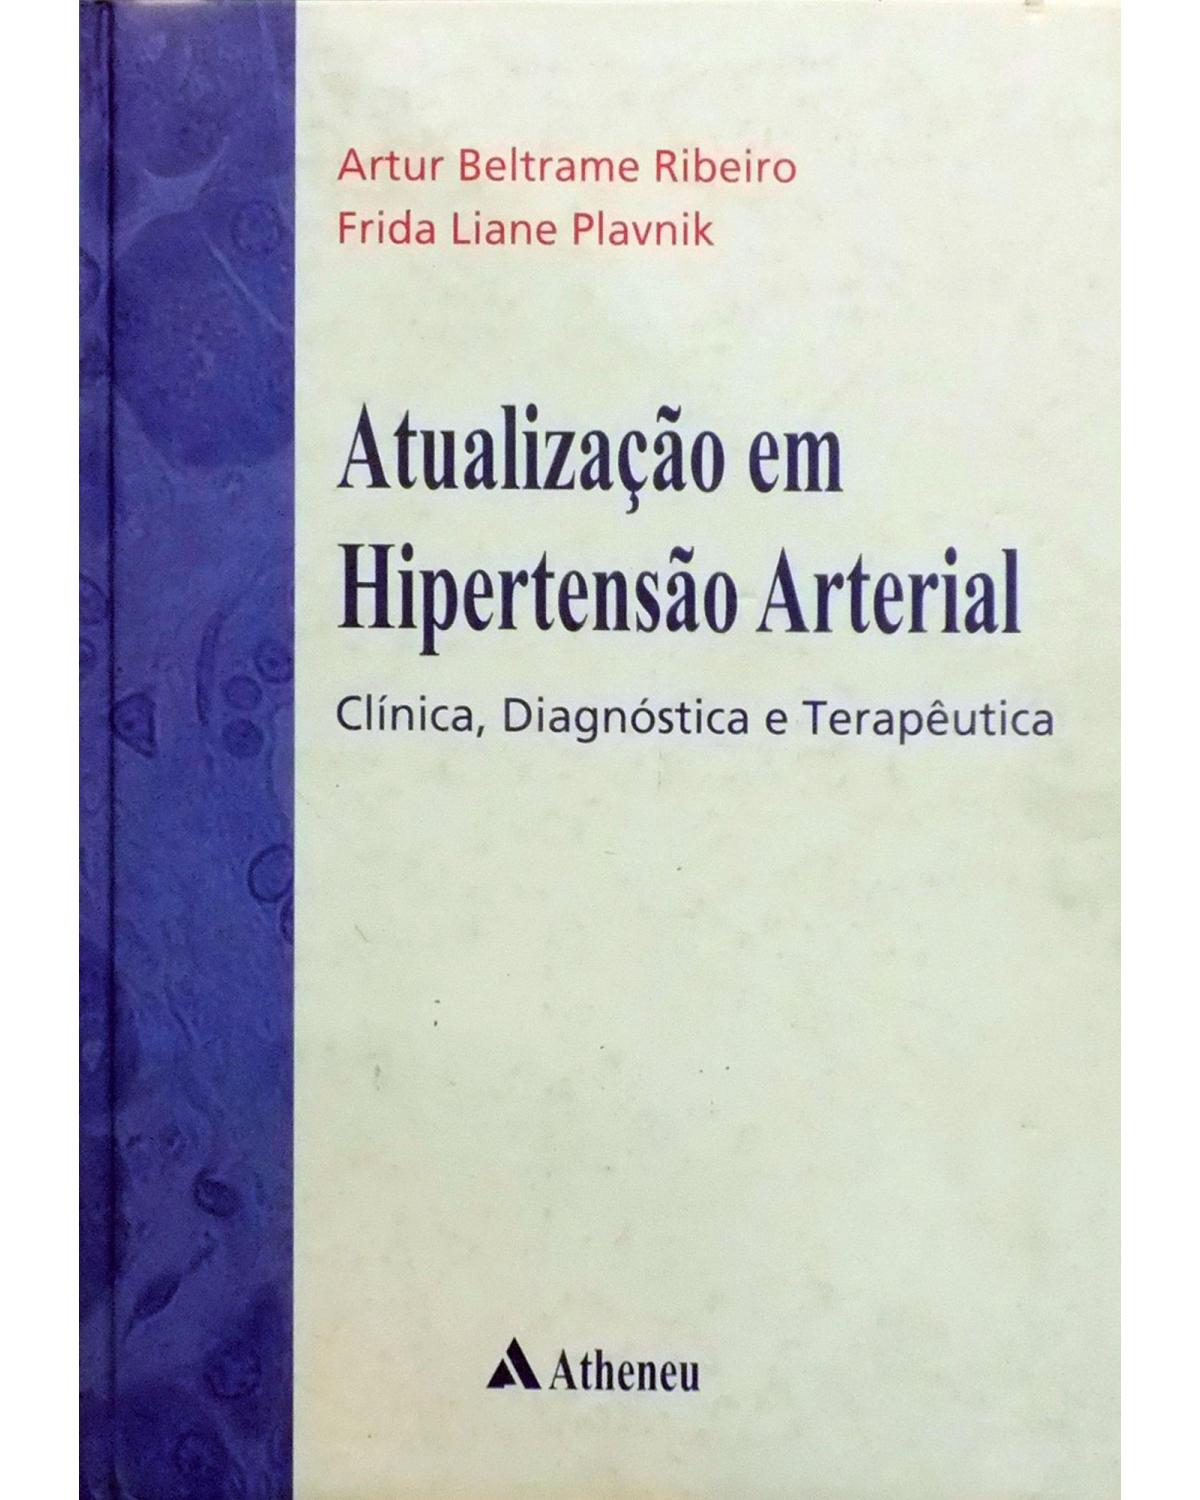 Atualização em hipertensão arterial - clínica, diagnóstica e terapêutica - 2ª Edição | 2007